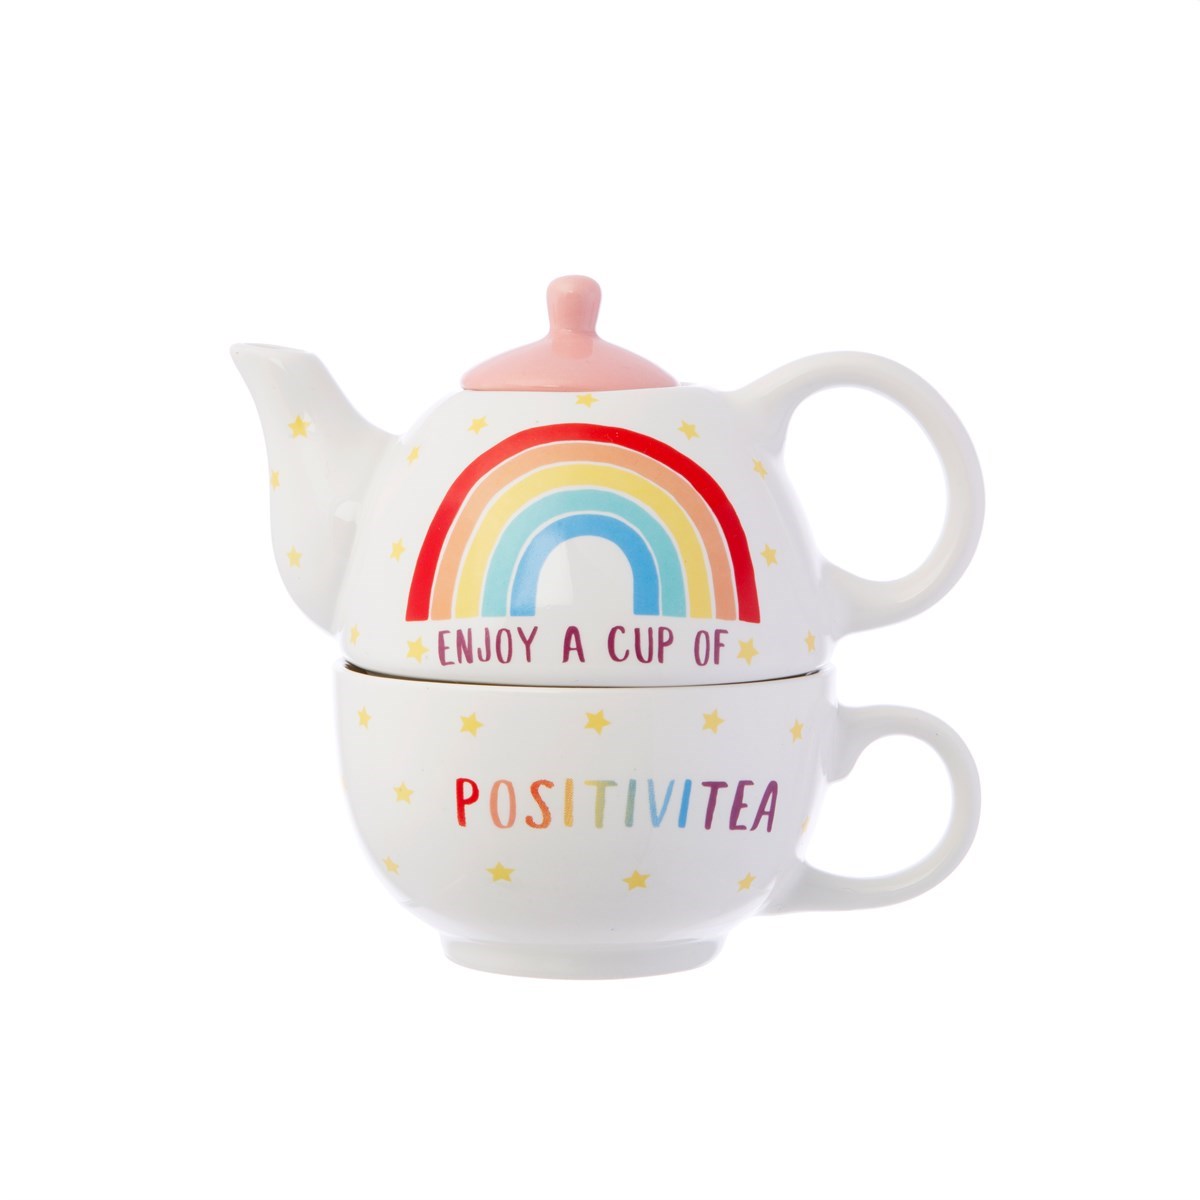 Rainbow Positivitea Tea For One1200 x 1200